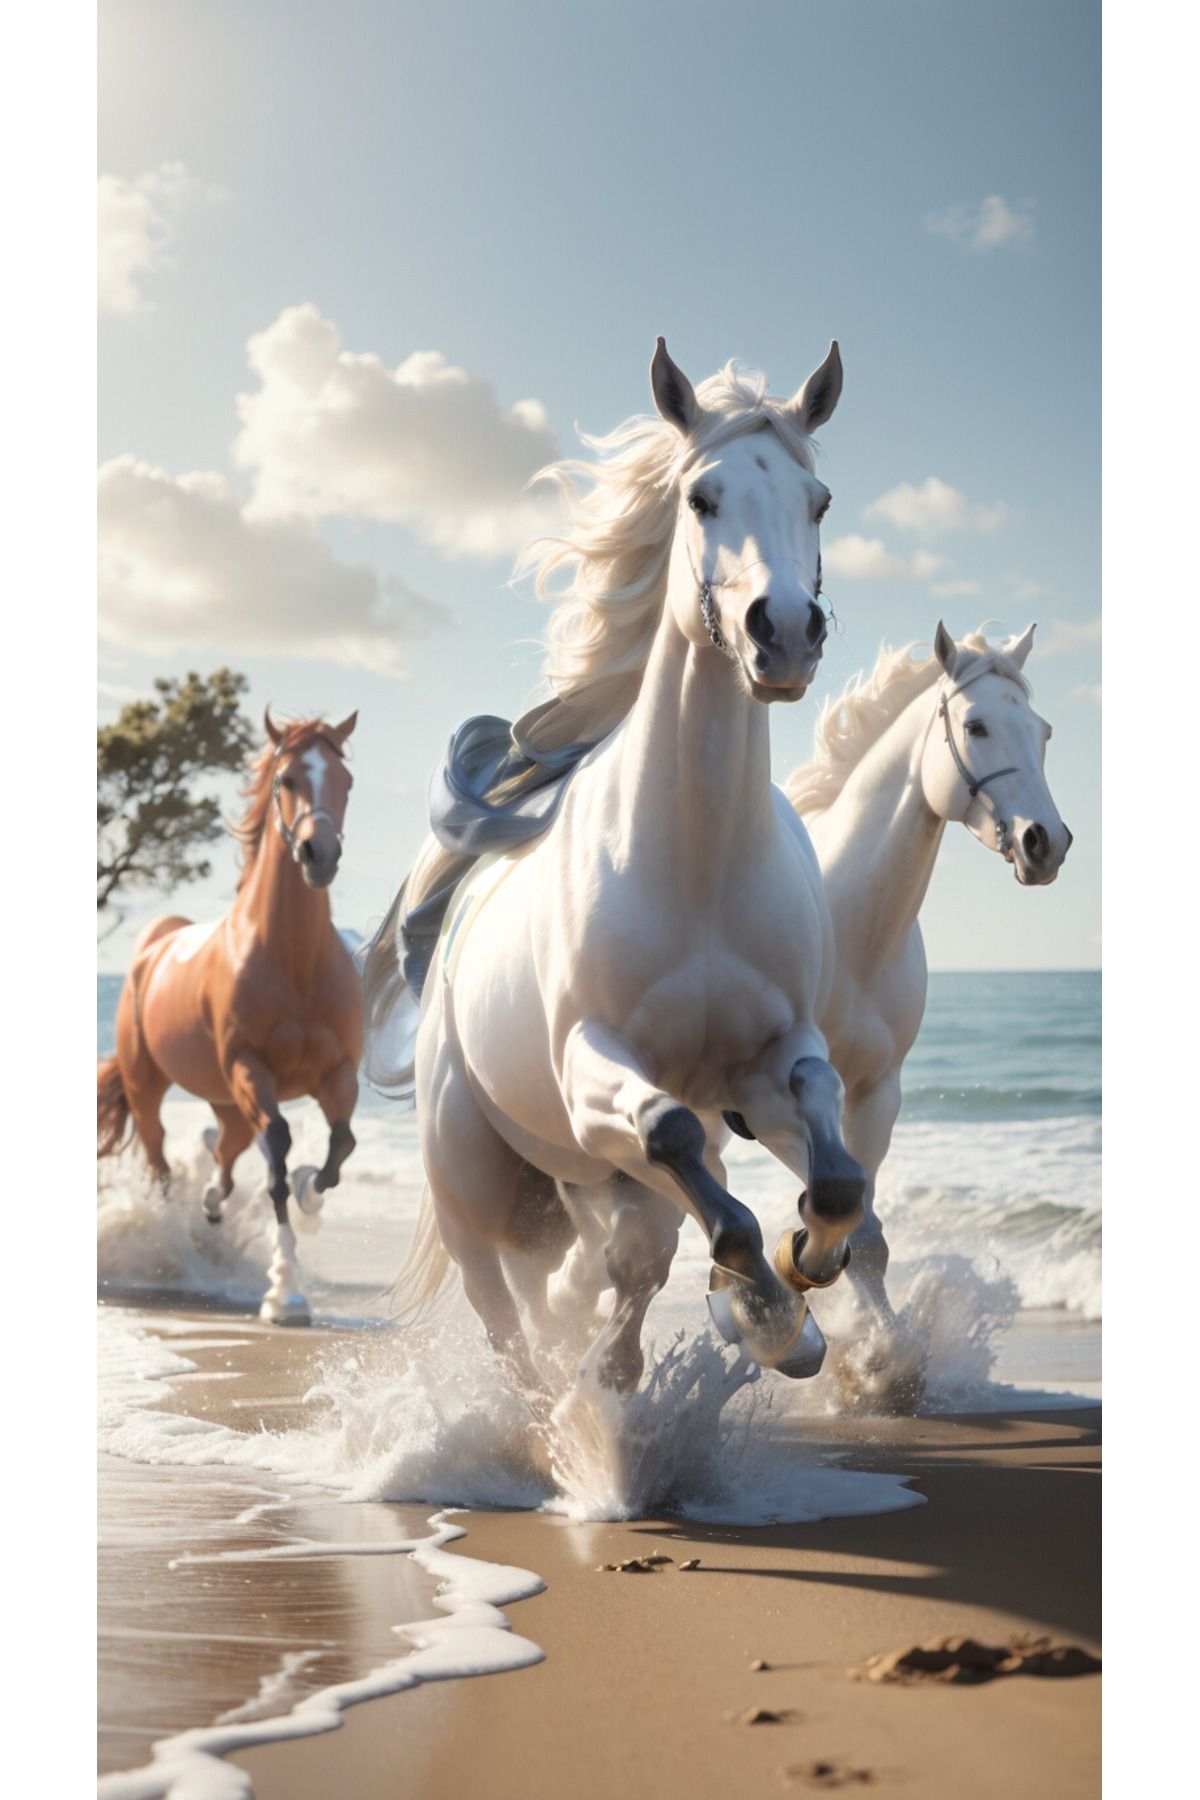 LİLYHOBBYLAND Renkli Baskılı Sayılarla Boyama Hobi Seti (Çerçeveli) 40x50 cm: Koşan Atlar 2